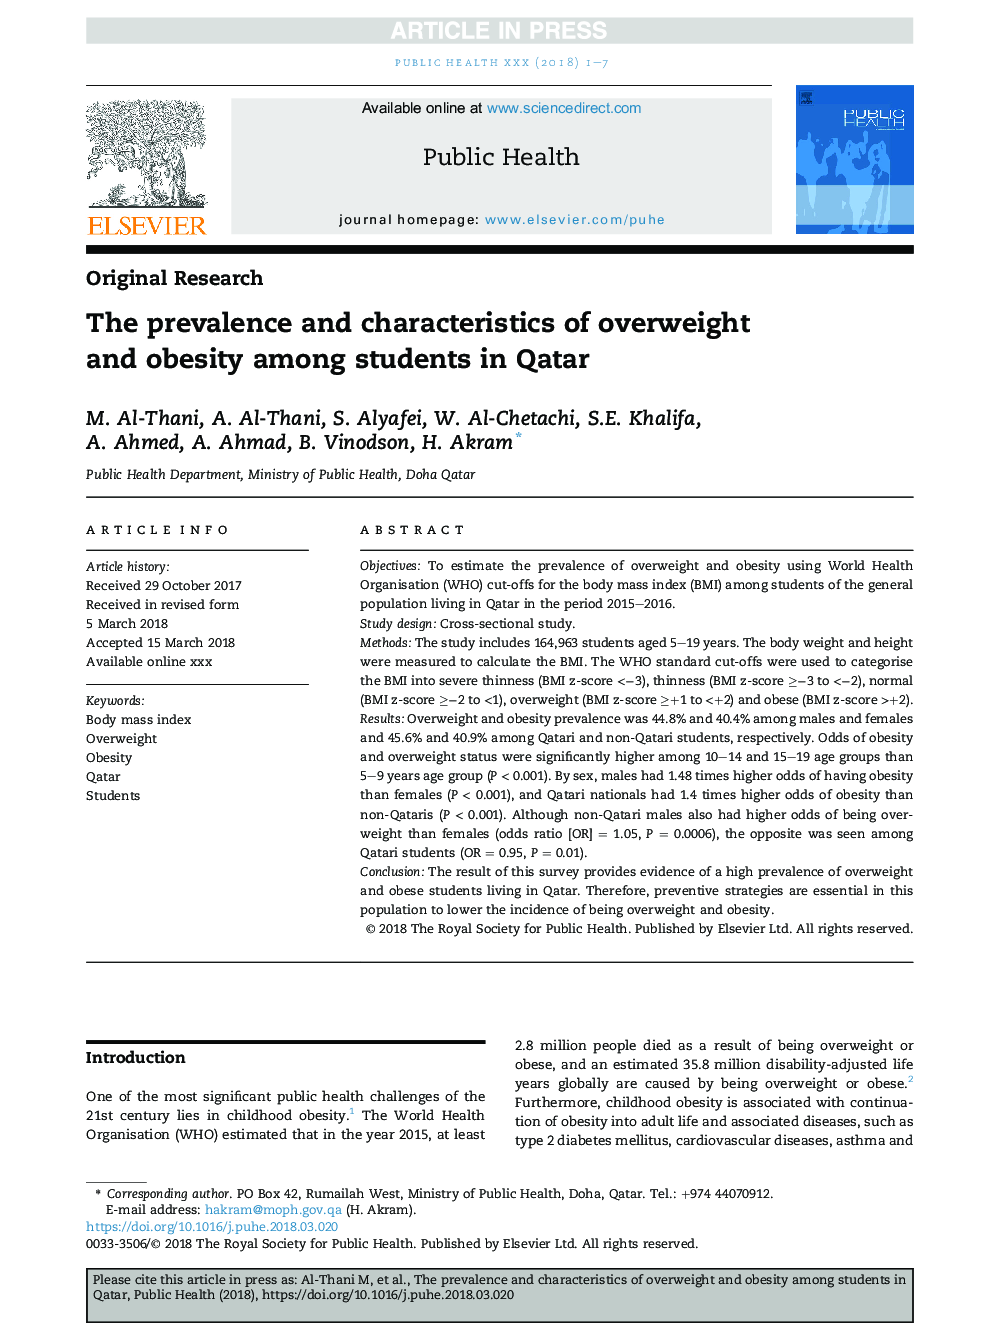 شیوع و ویژگی های اضافه وزن و چاقی در دانشجویان قطر 